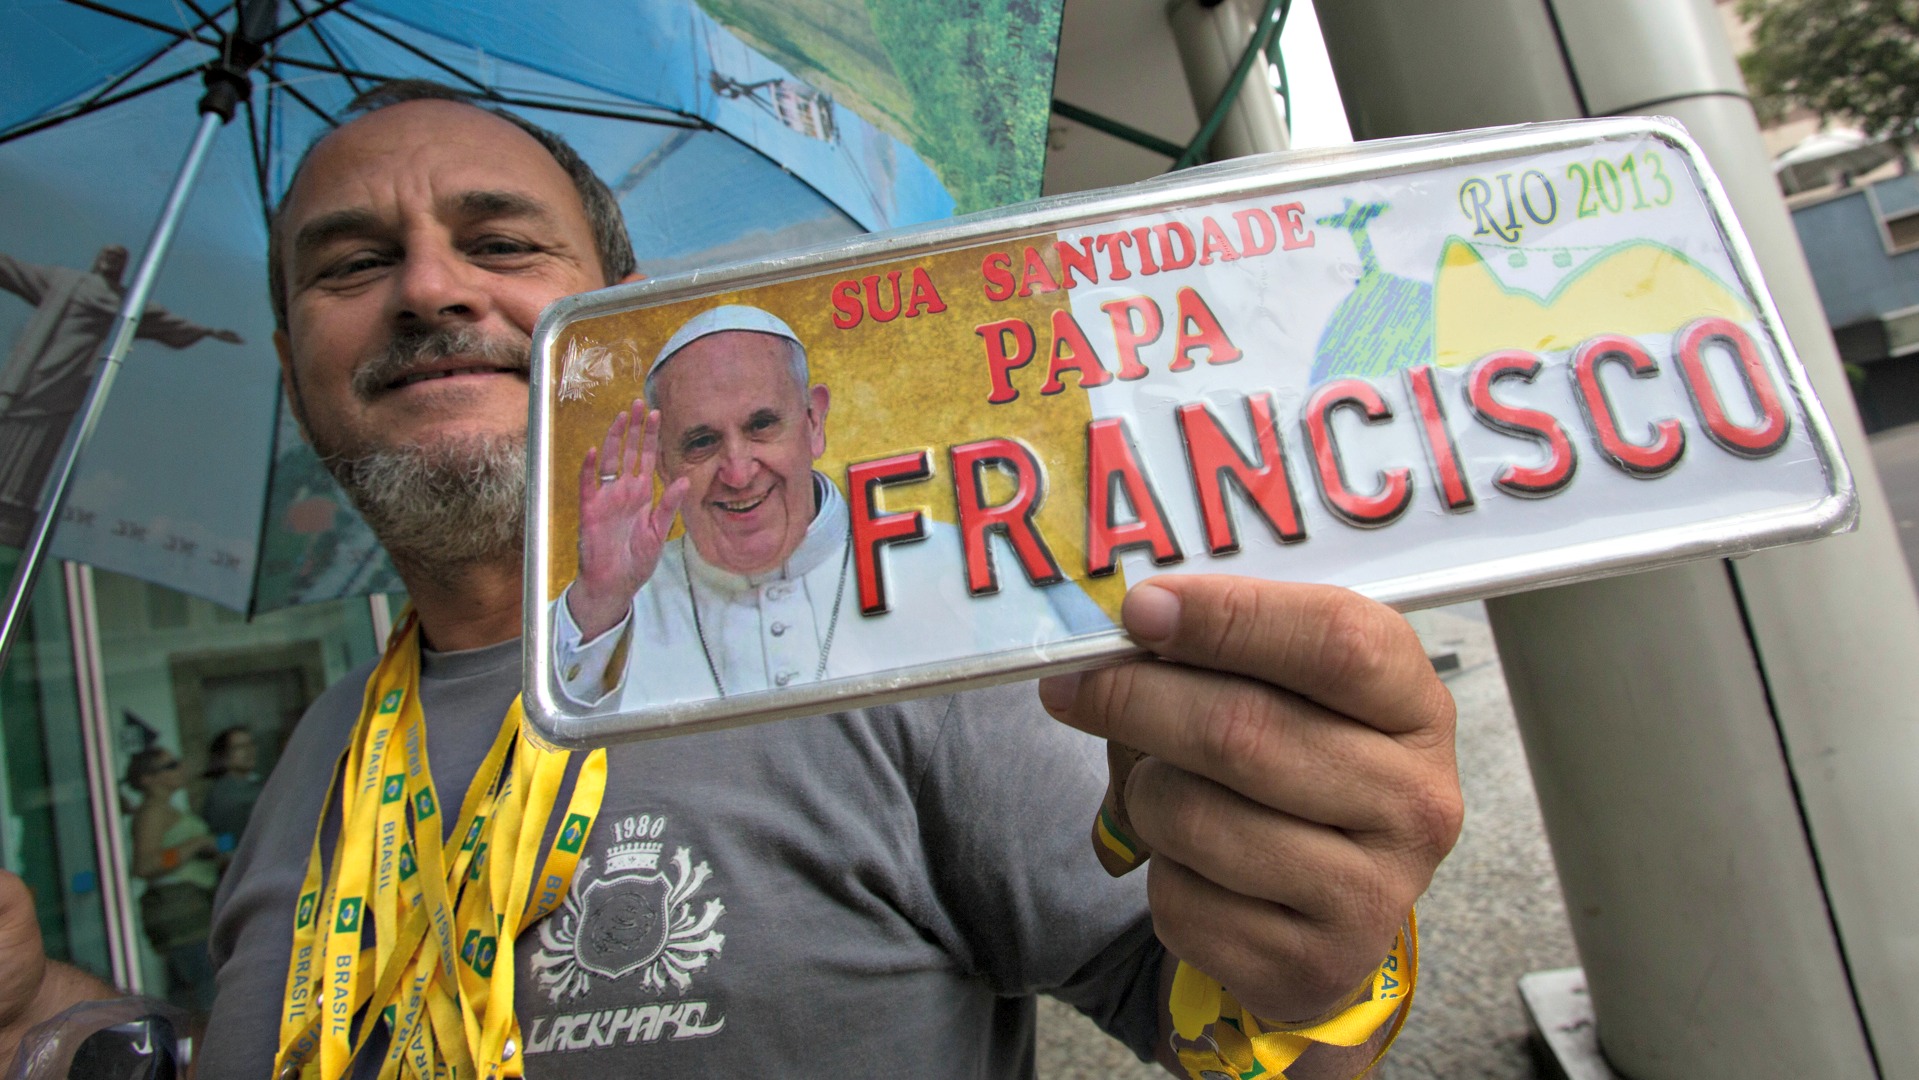 Le pape François a provoqué un fort engouement chez les catholiques du monde entier (Photo:archidiocèse de Rio/Flickr/CC BY-ND 2.0)